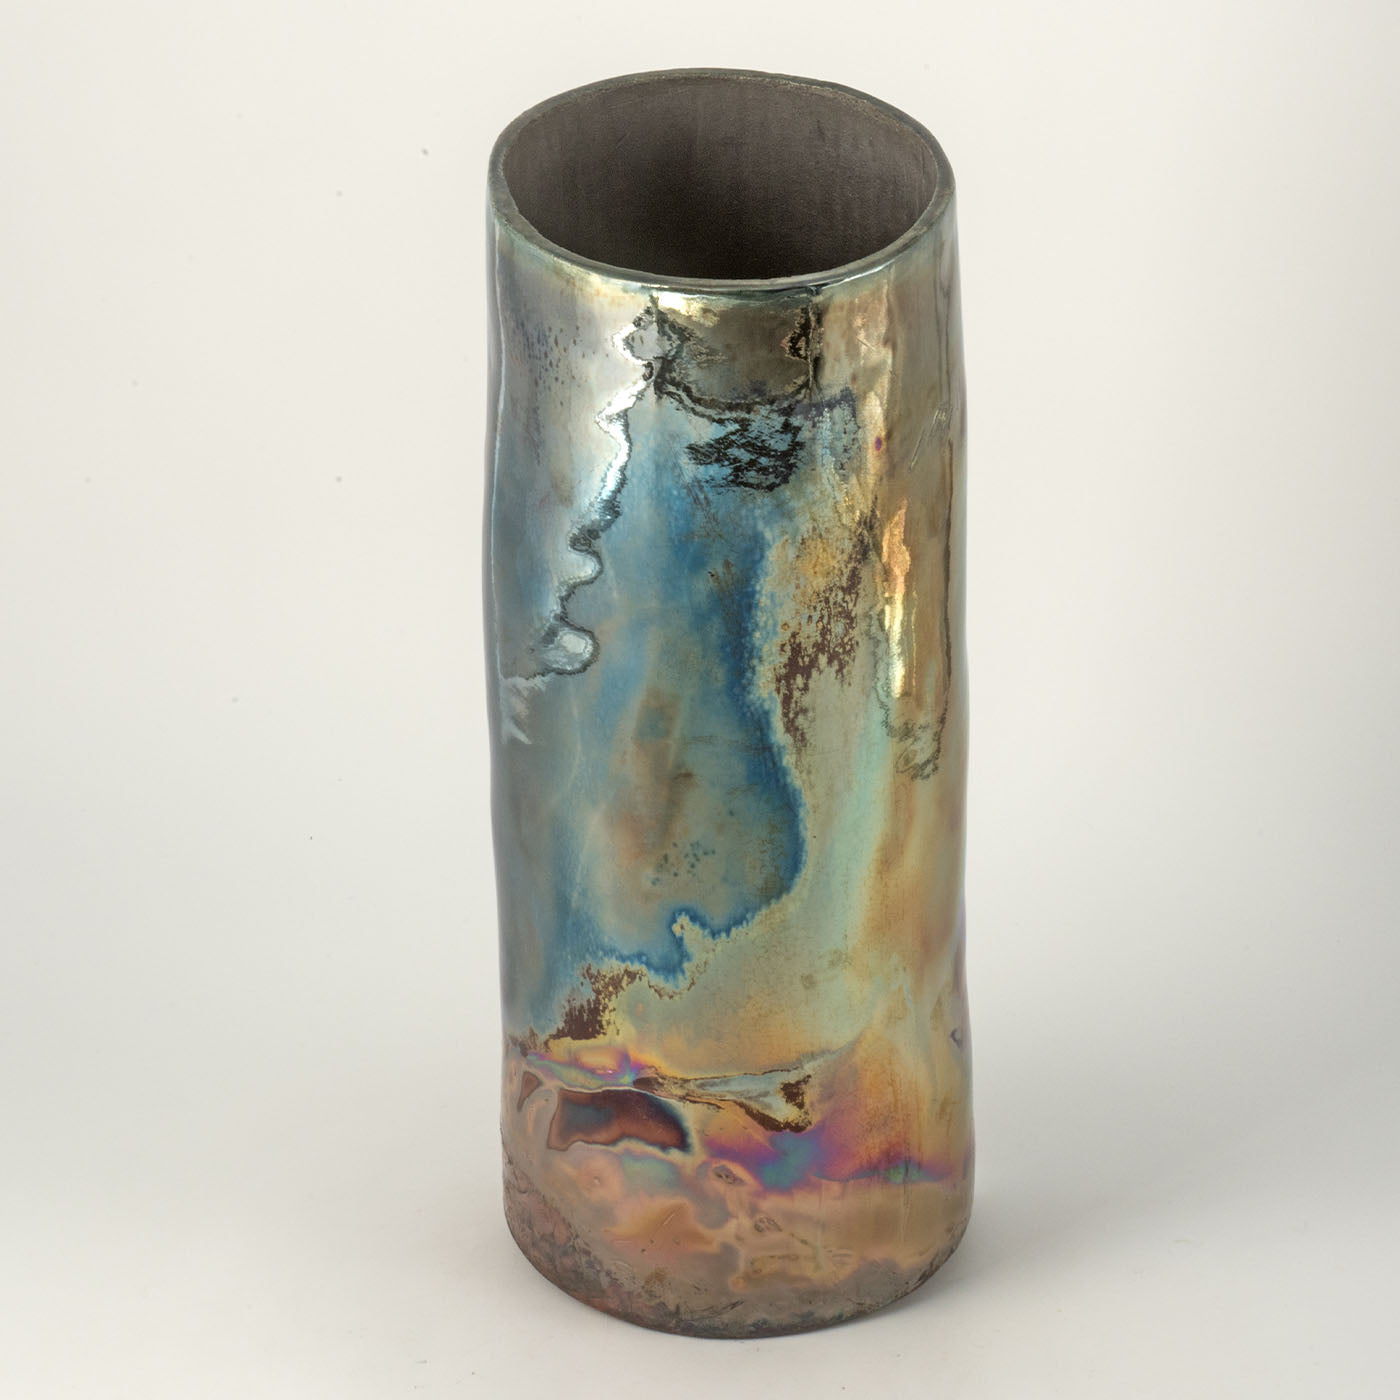 Alba Sul Mare Polychrome Ceramic Sculpture/Vase by Nino Basso - Alternative view 4